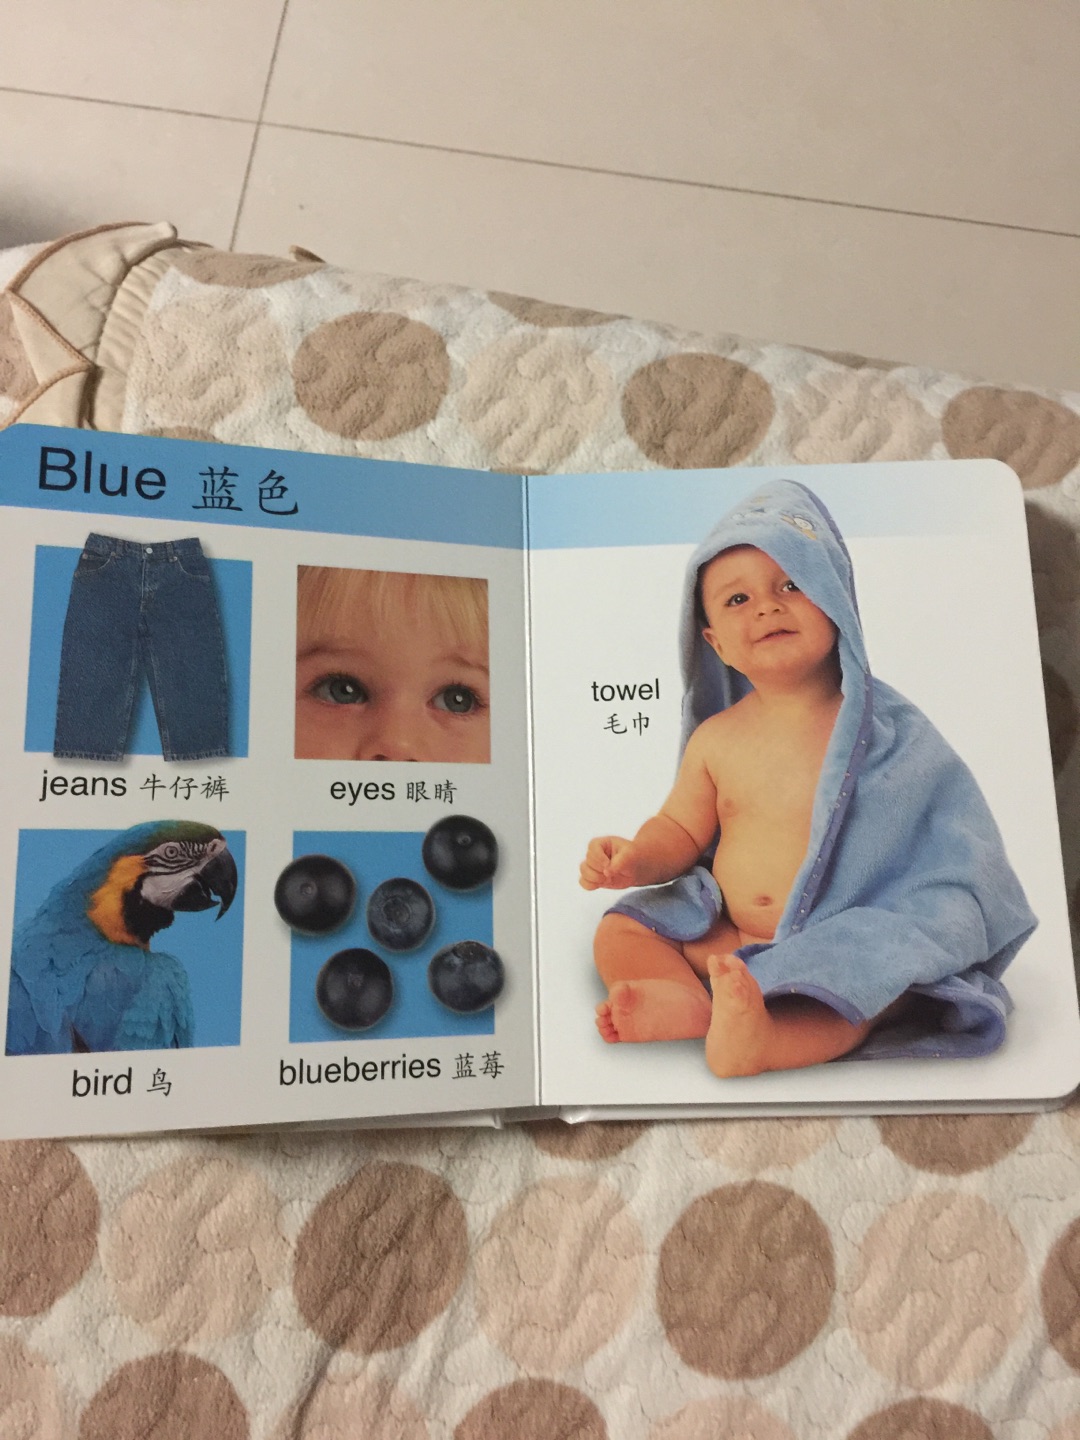 自营发货速度快，价格也便宜。这本书不错，很多生活中的图片，让宝宝更容易理解